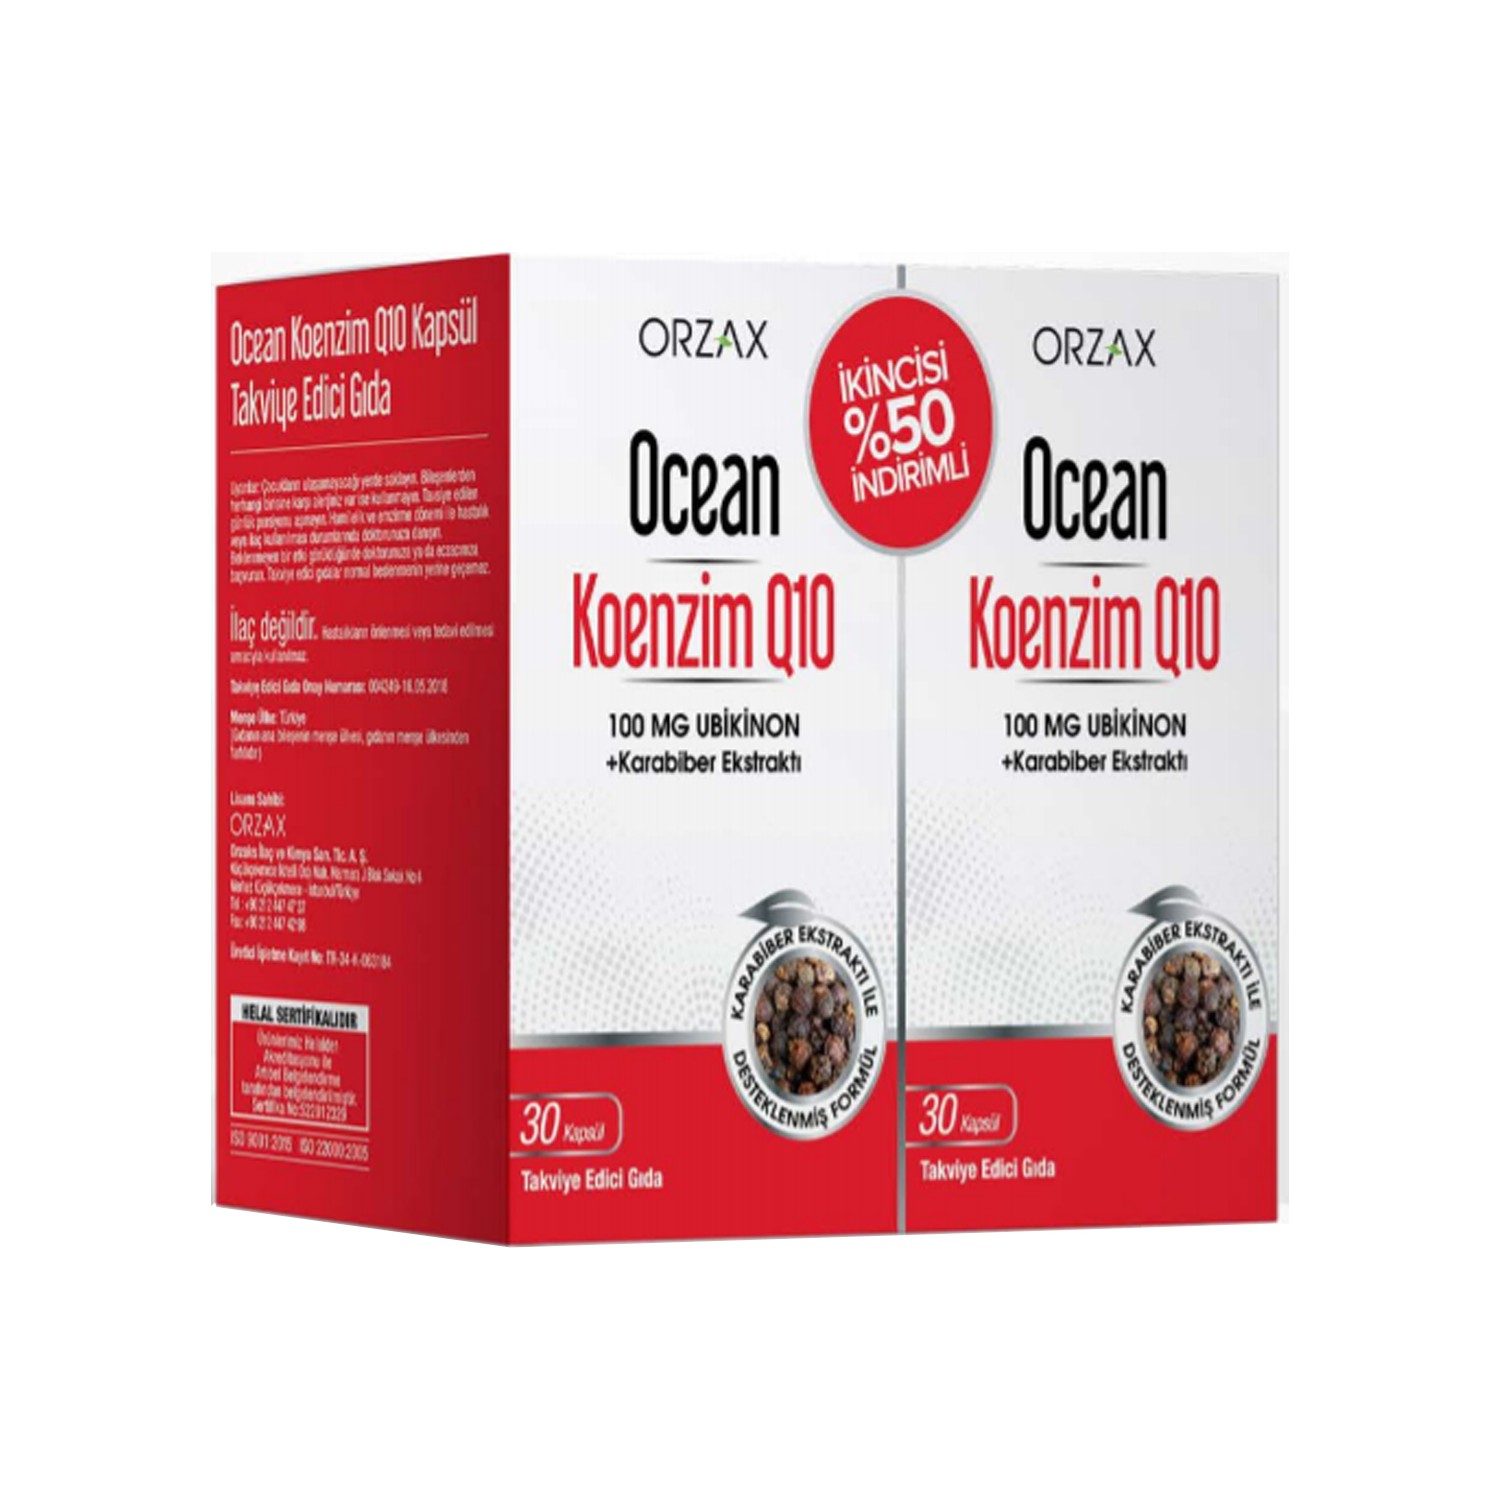 Коэнзим Q10 Ocean, 2 упаковки по 30 капсул цена и фото